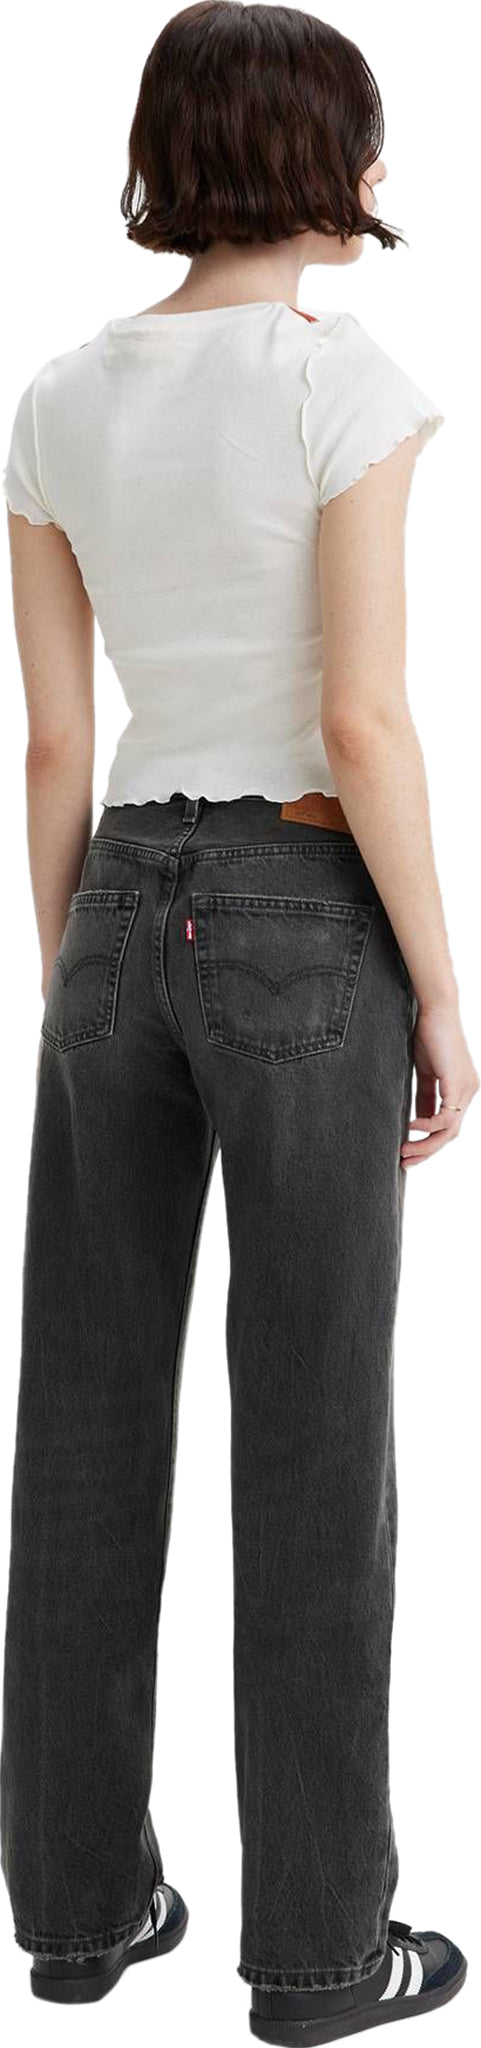 Levi's 501 '90s Original Jeans - Women's